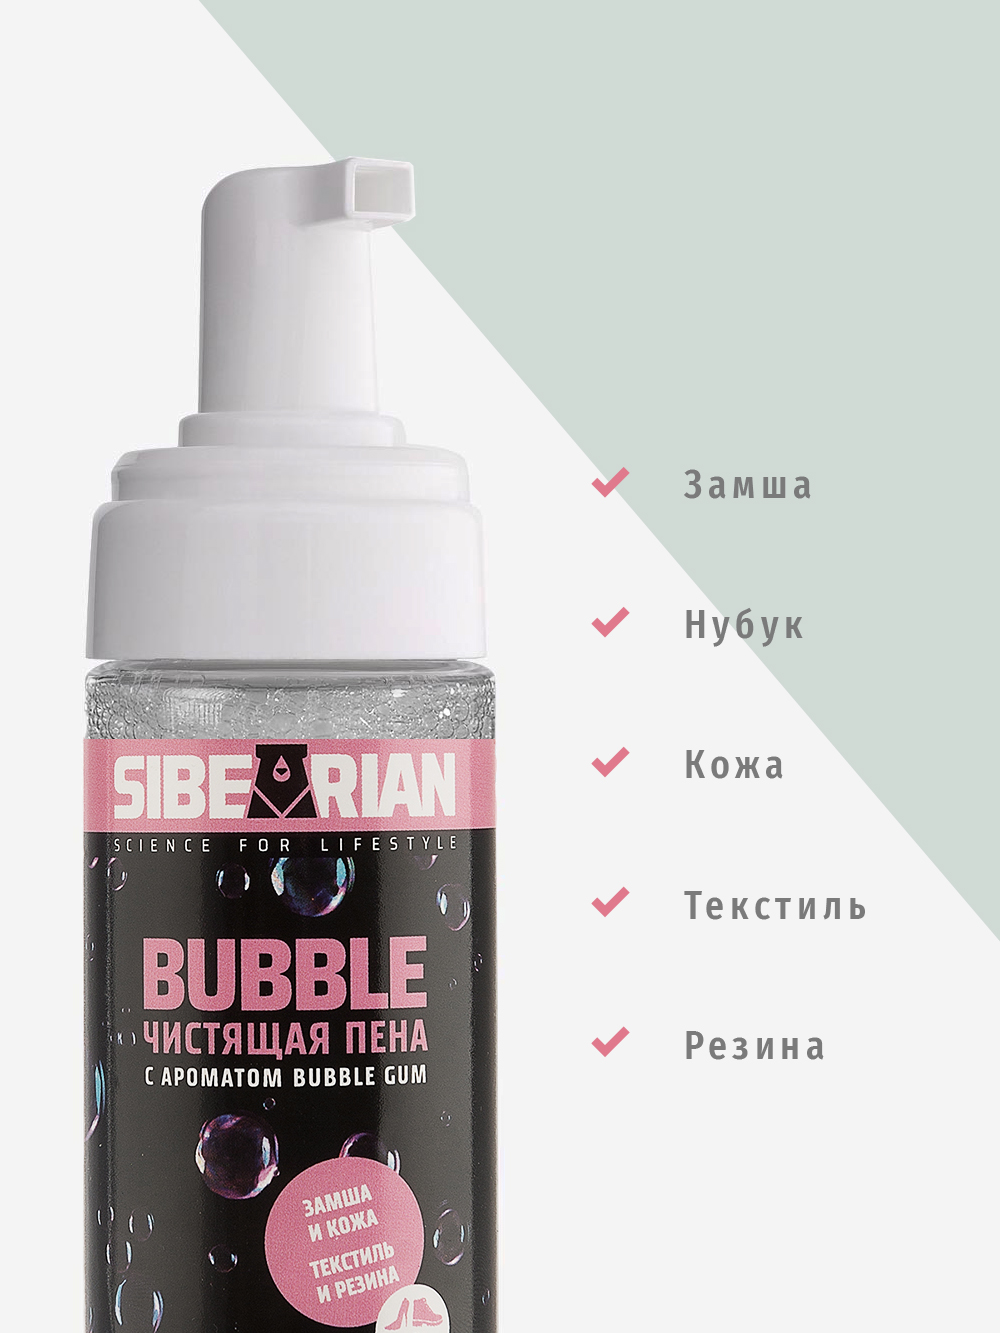 Пена для чистки Sibearian Bubble 150 мл